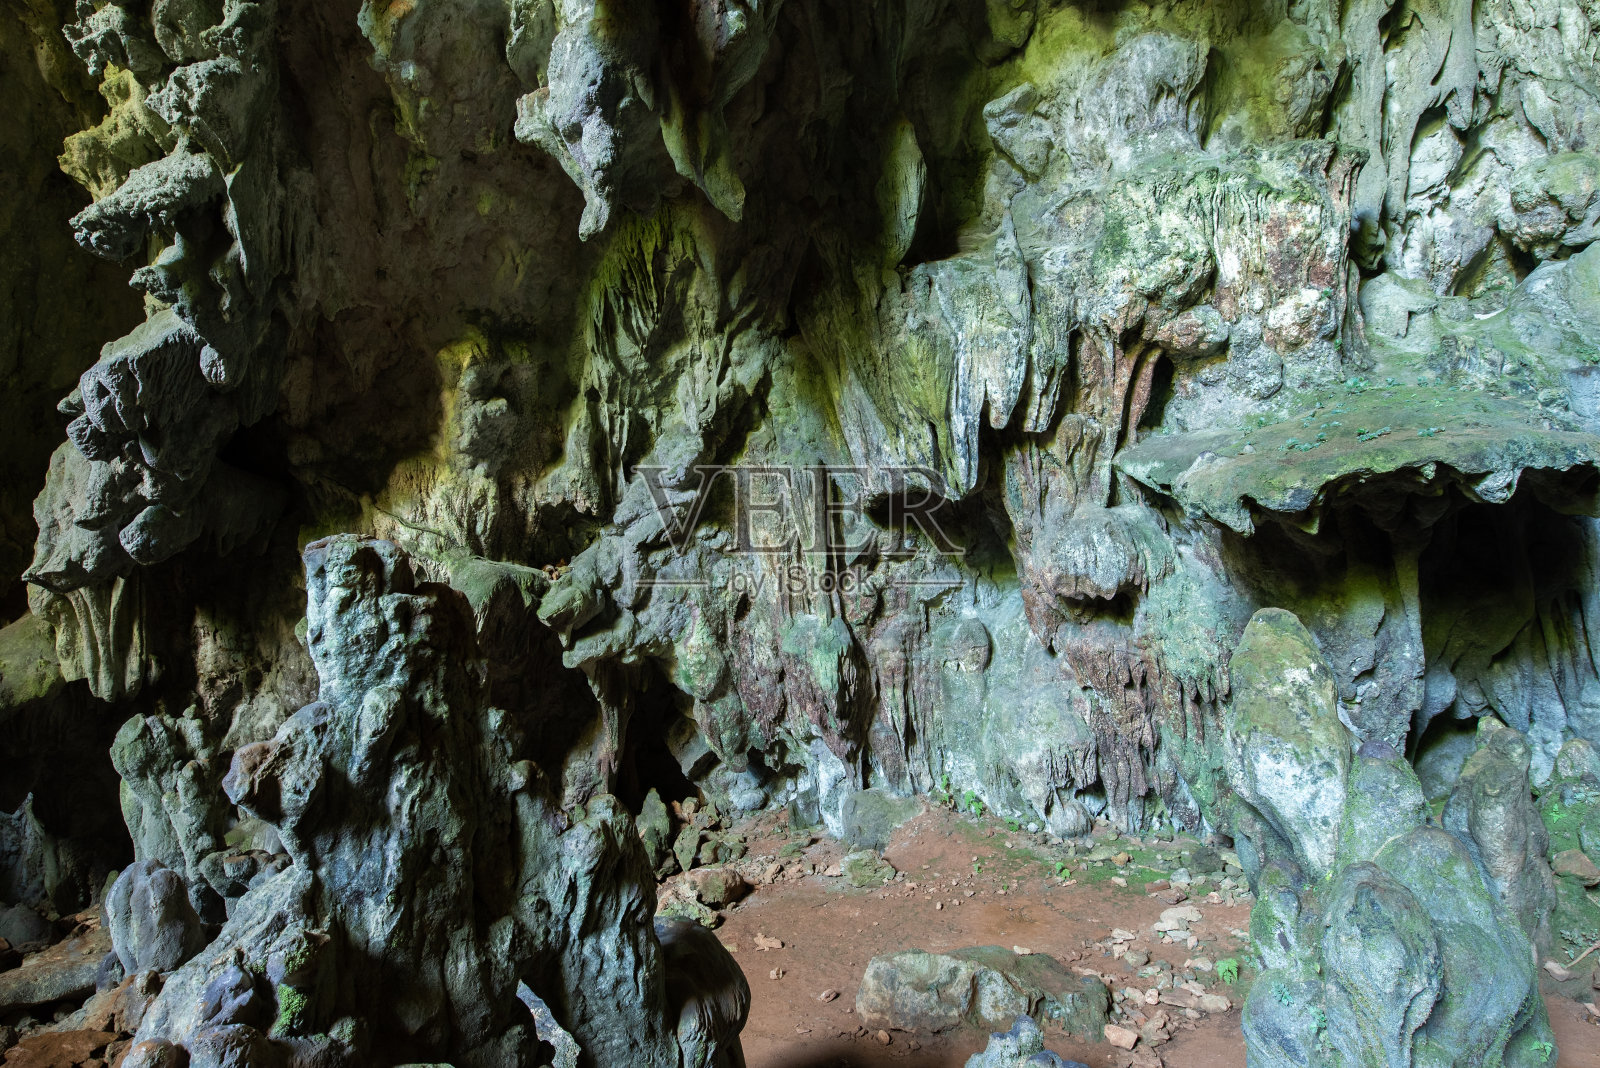 Tham Luang - Khun Nam Nang Non 是 Tham Luang'u2013Khun Nam Nang Non 森林公园的洞穴系统，位于泰国清莱 Doi Nang Non 山脉 Pong Pha照片摄影图片